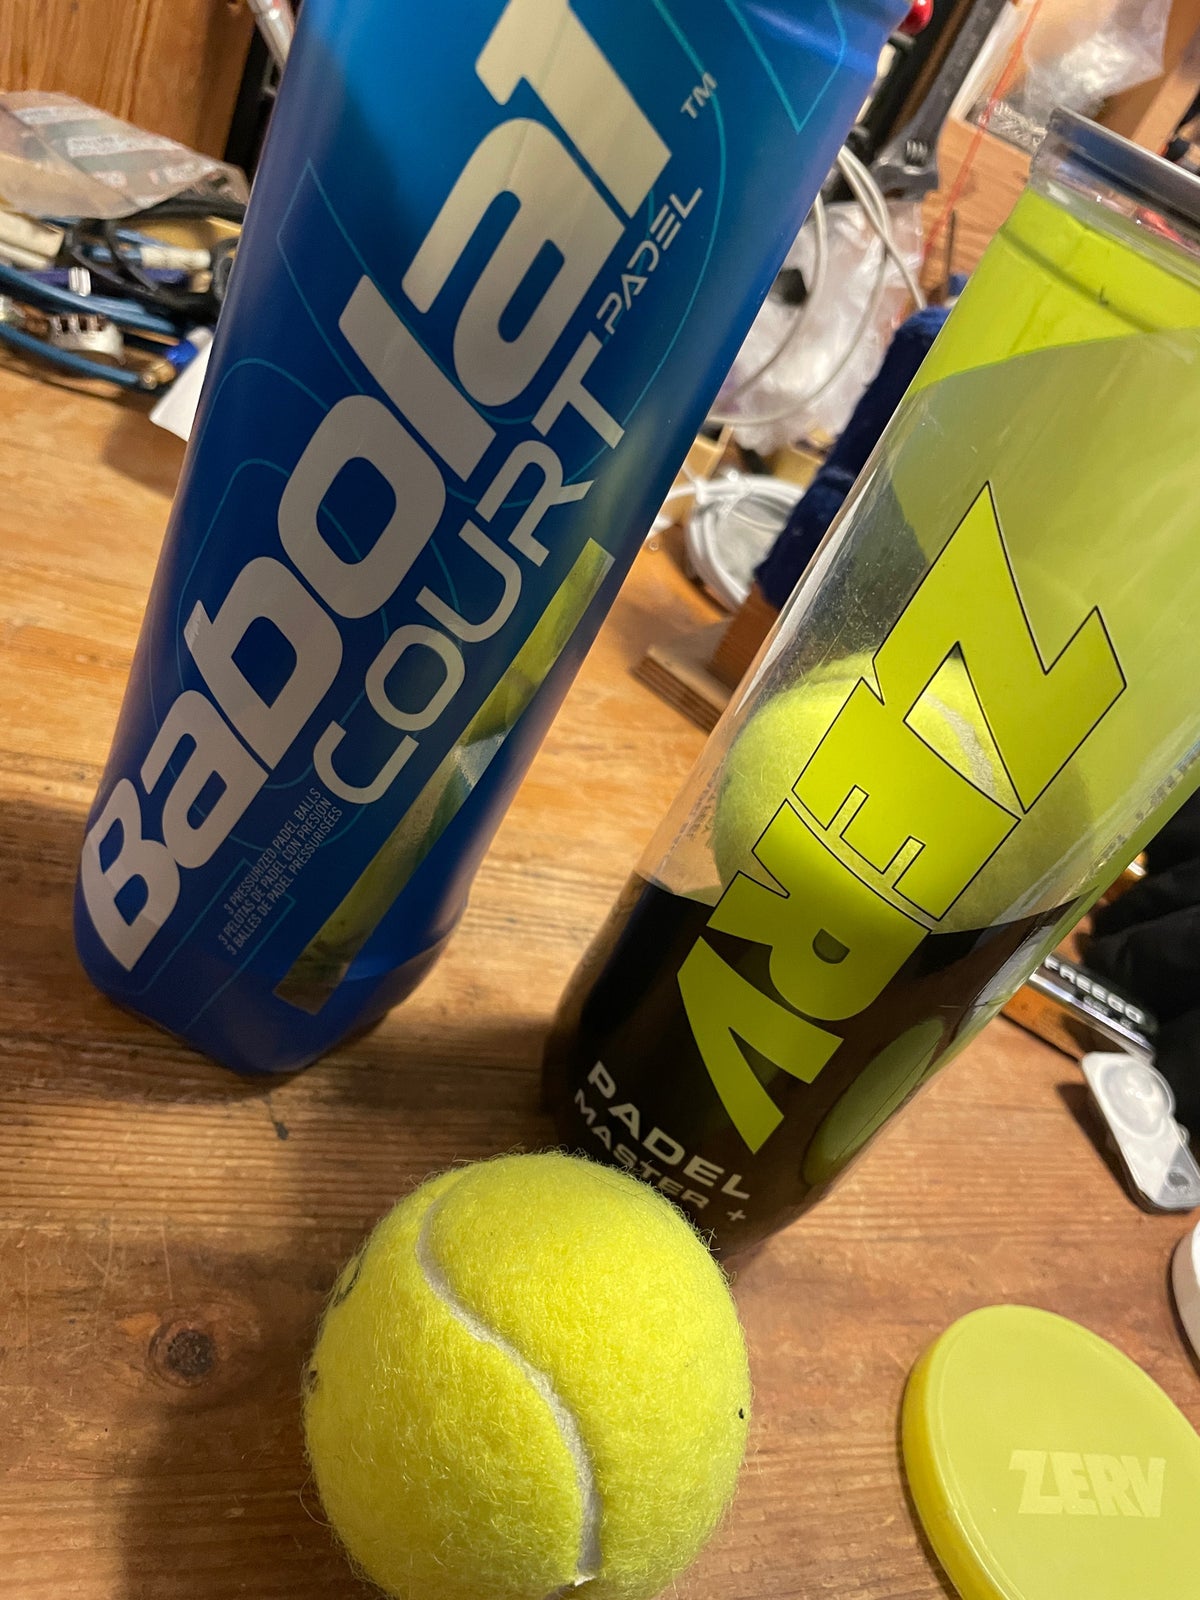 Tennisbolde, Babolat, Zerv